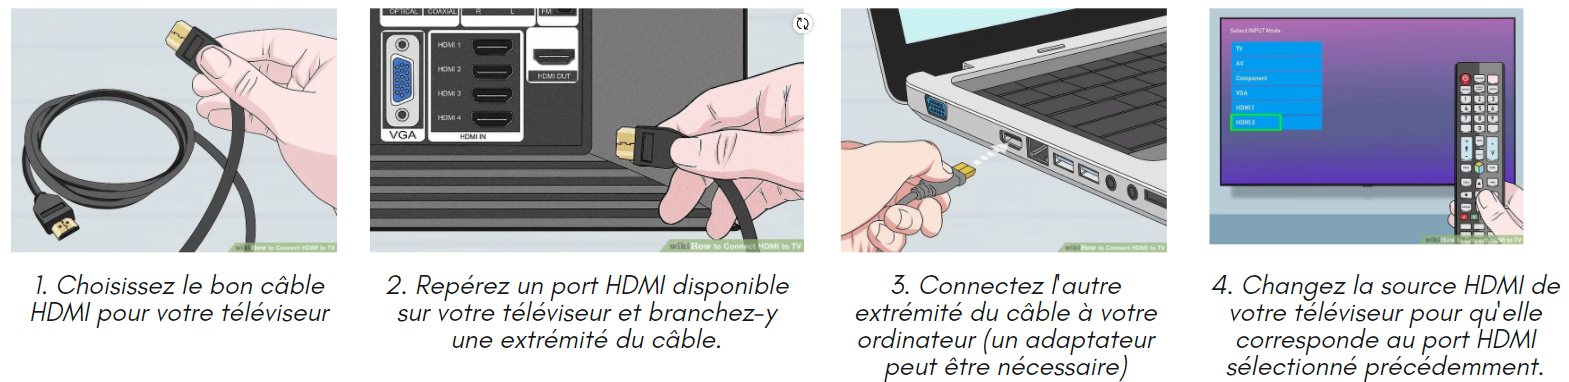 Regarder Xerb sur la télévision en utilisant votre ordinateur + câble HDMI